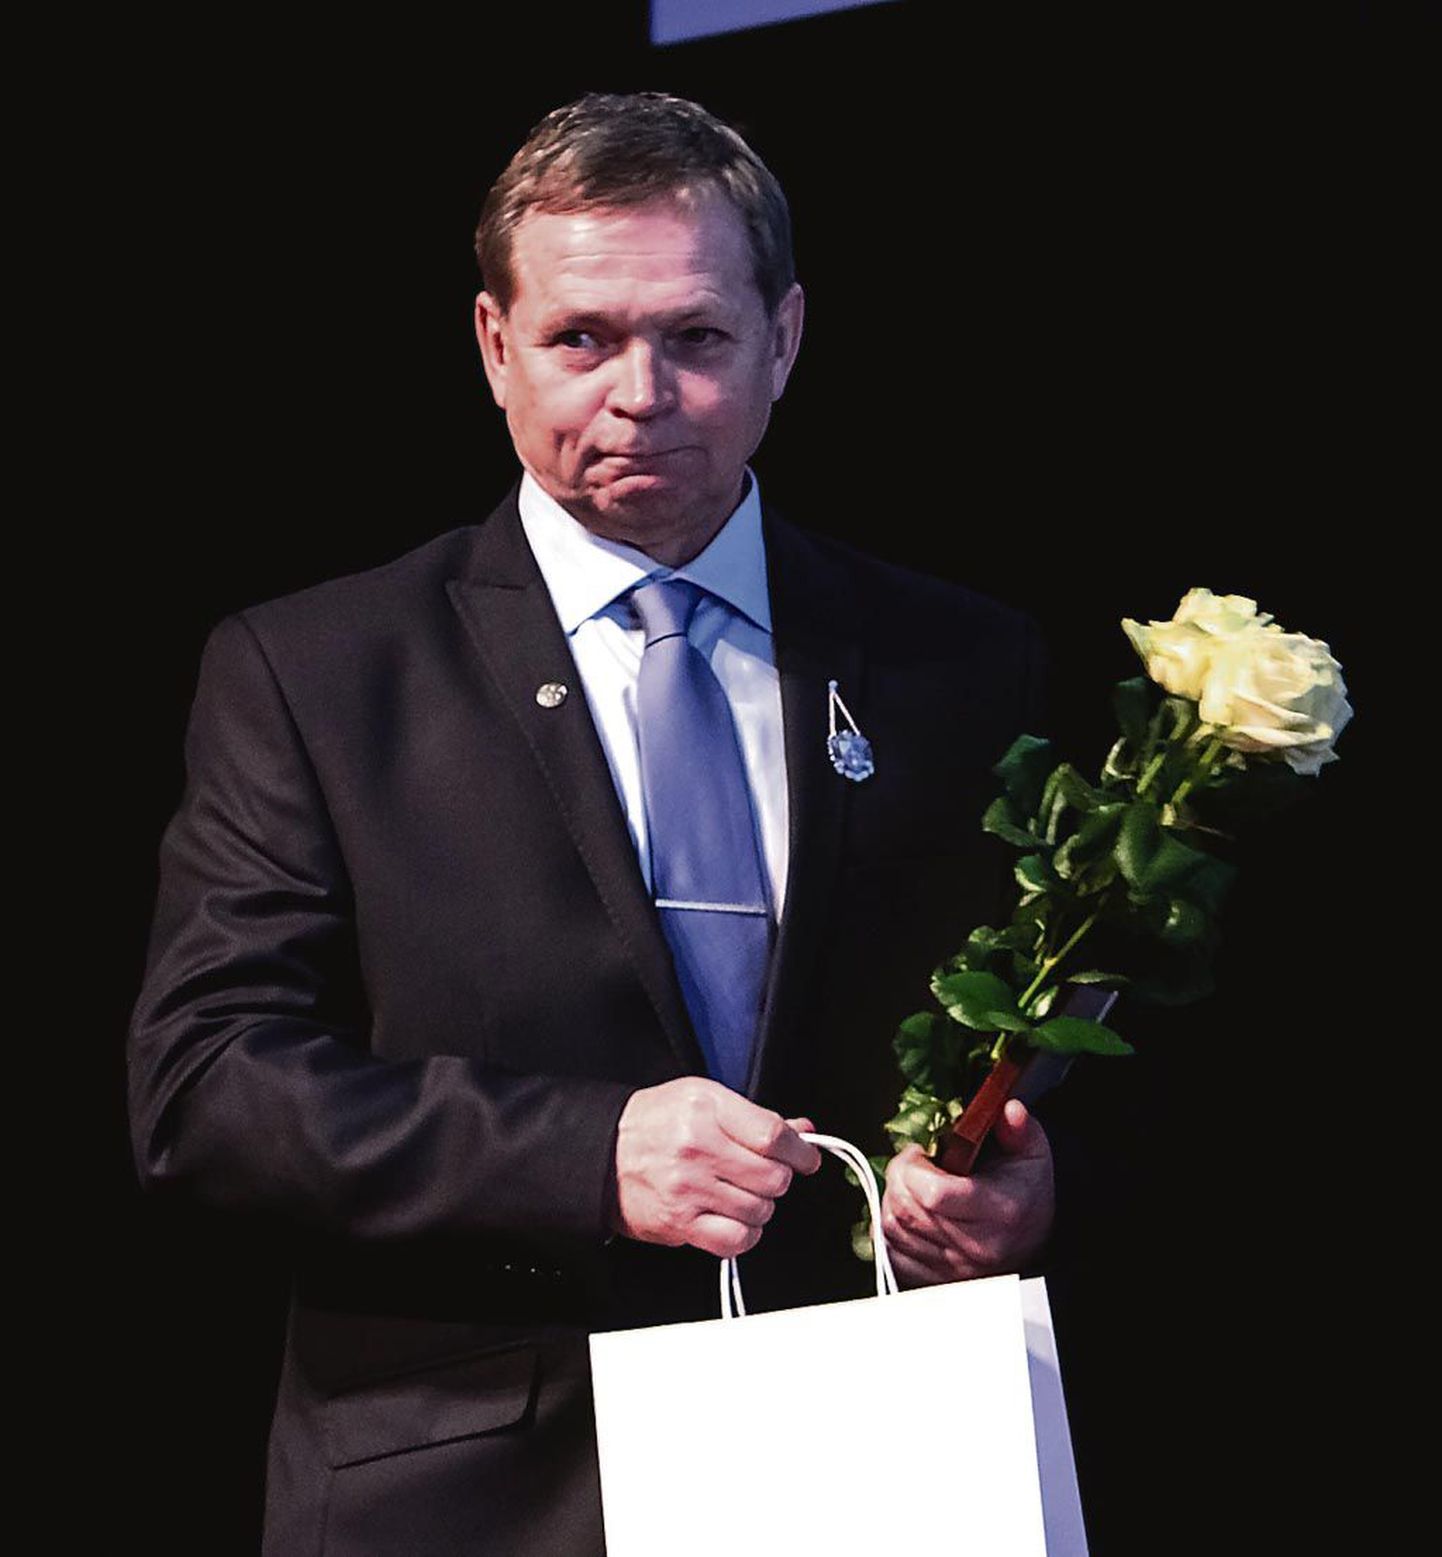 Pärnu linna vapimärgi kavaler, jalgpallitreener Jüri Saar tänas sõnavõtus tema tööd väärtustanuid.